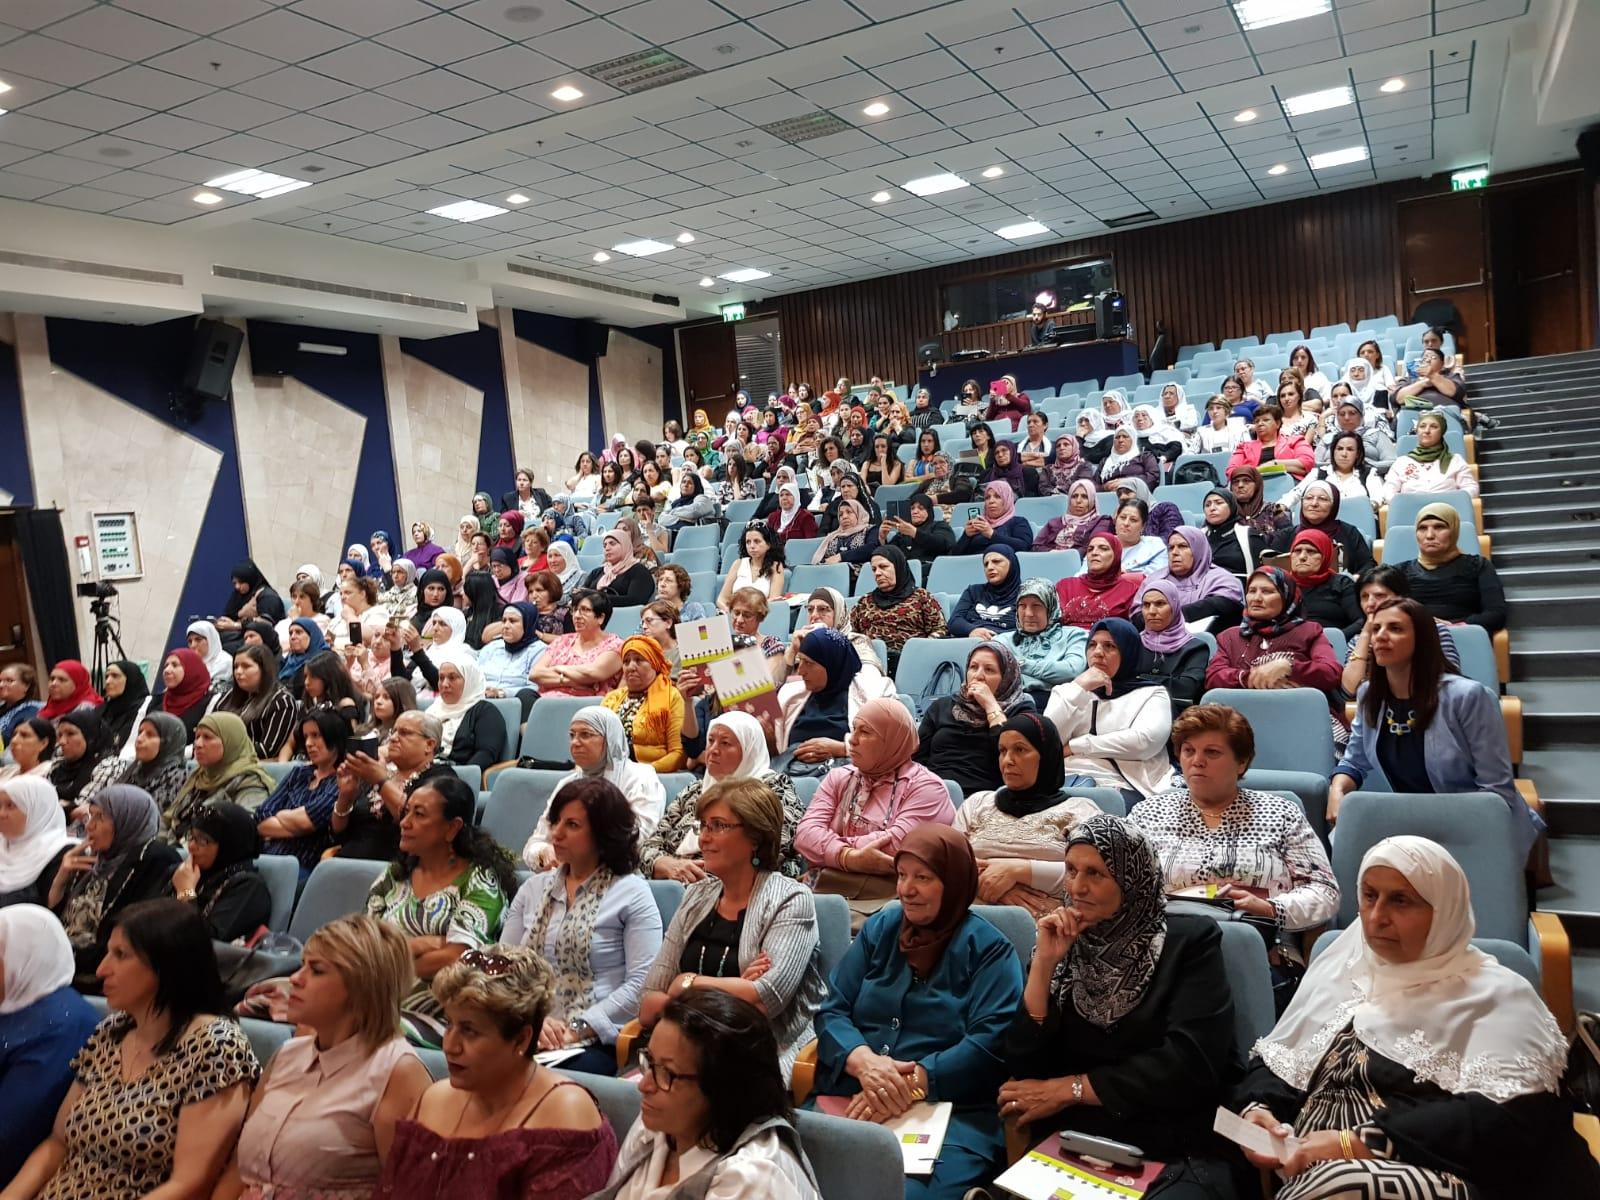 الناصرة: انعقاد مؤتمر كيان لتمثيل النساء في السلطات المحلية